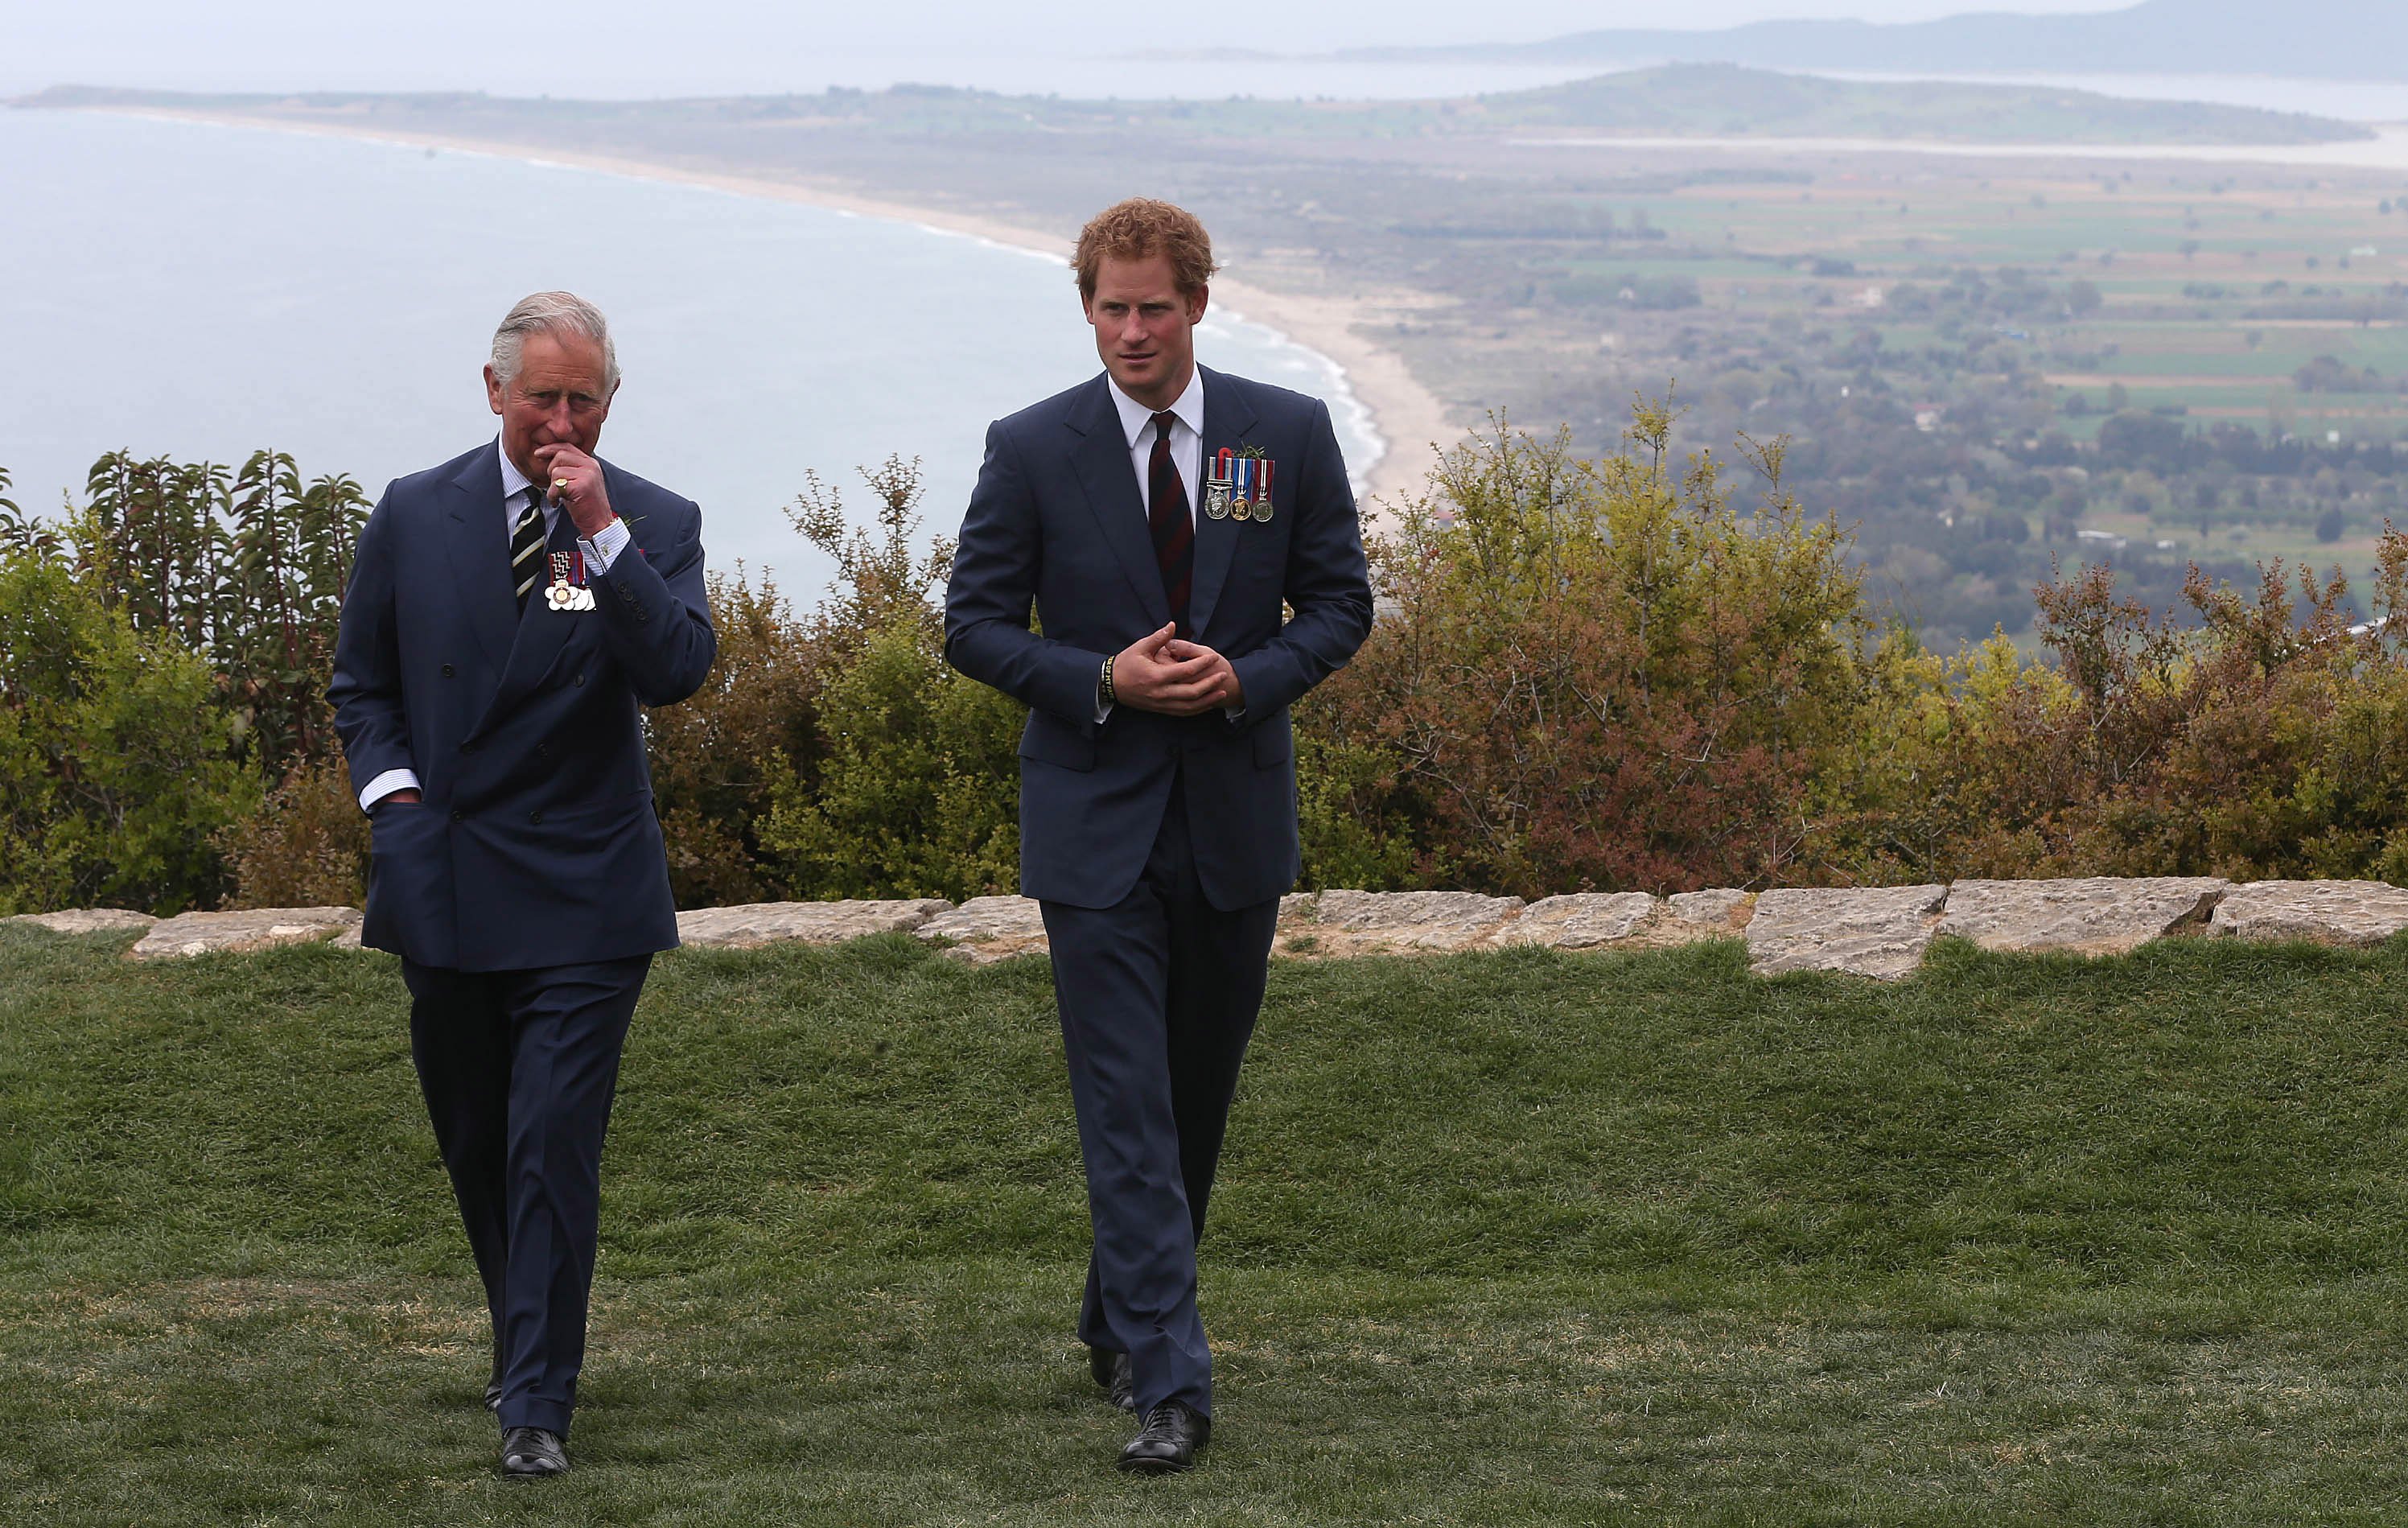 Prinz Harry unterhält sich mit König Charles III. während eines Besuchs in The Nek, einem schmalen Bergrücken auf dem Schlachtfeld von Anzac auf der Halbinsel Gallipoli, als Teil der Gedenkfeiern zum 100. Jahrestag der Schlacht von Gallipoli am 25. April 2015 in Gallipoli, Truthahn. | Quelle: Getty Images